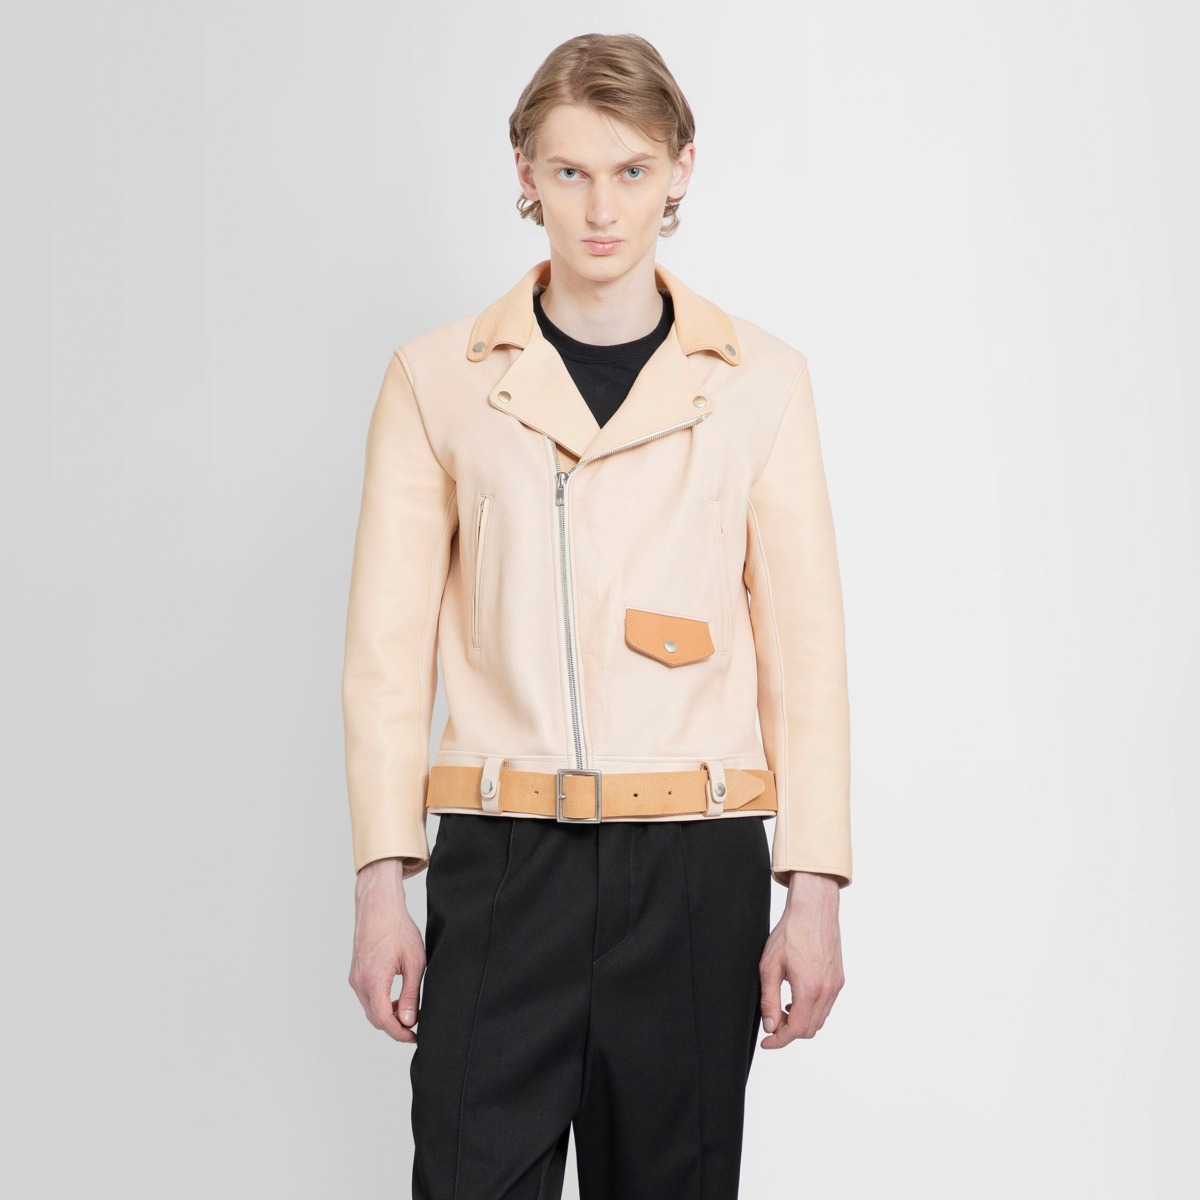 Antonioli Men's Beige Leather Jacket by Hender Scheme GOOFASH